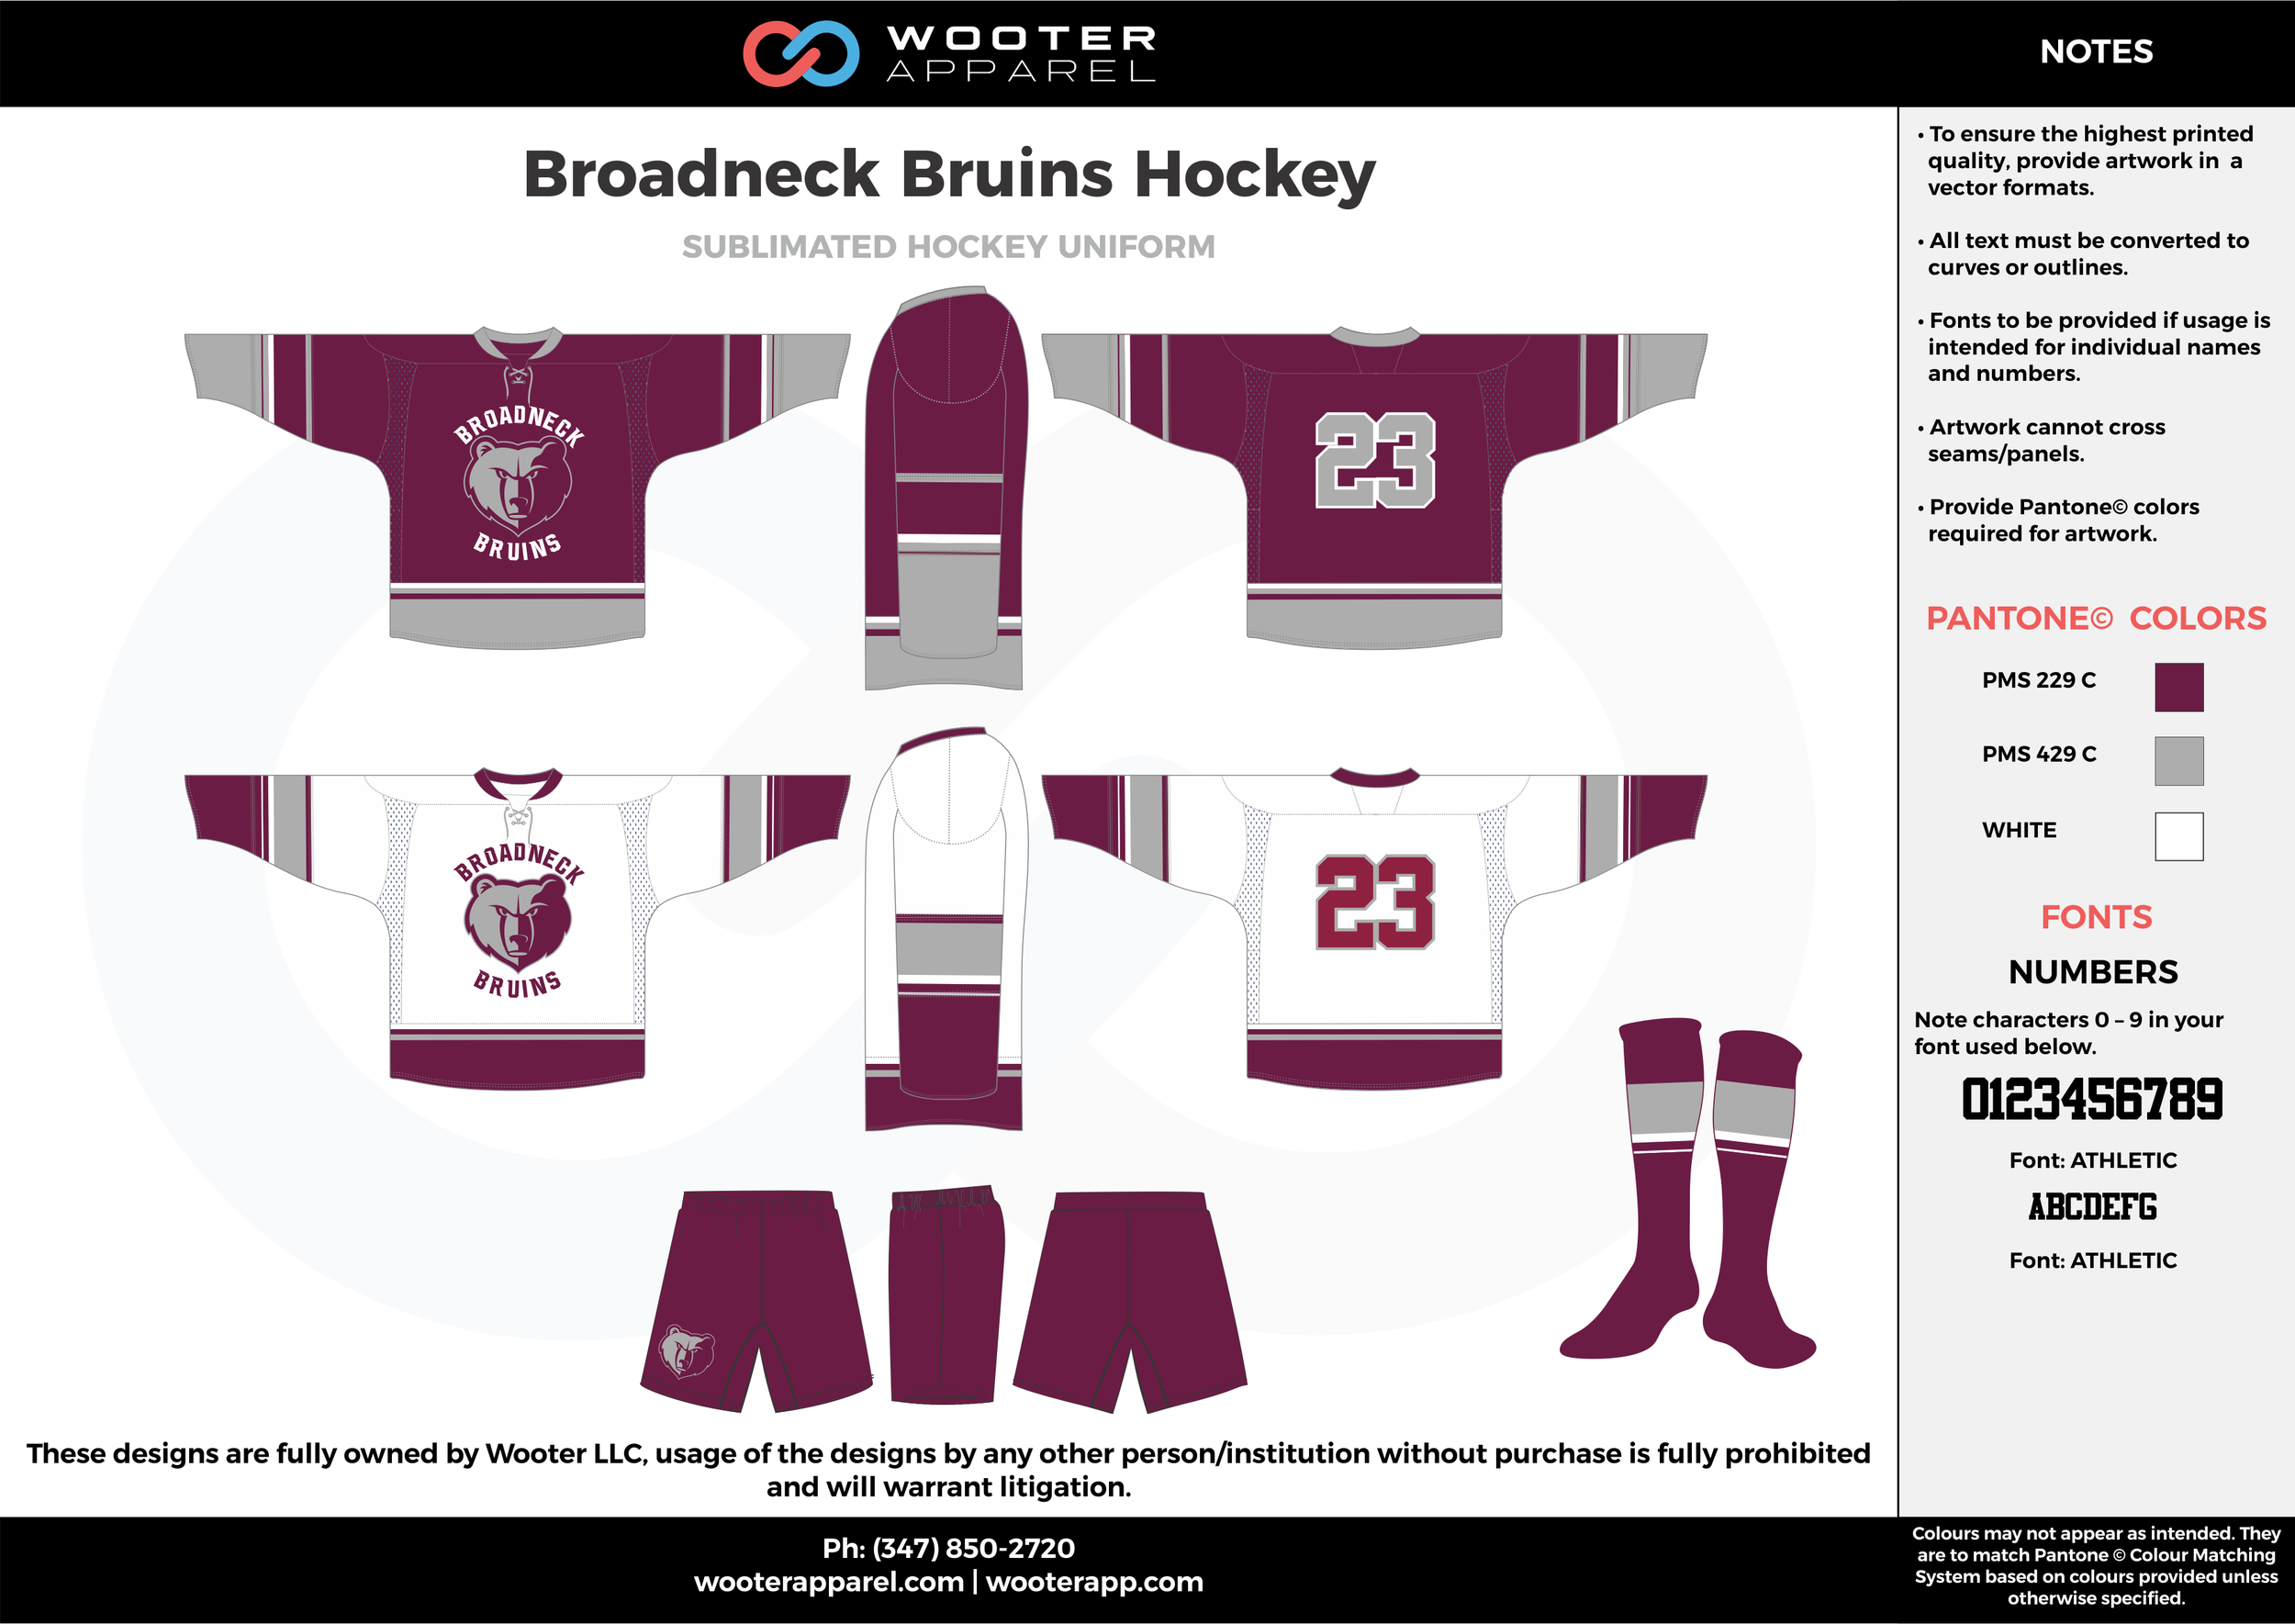 Hockey sweatshirt-youth medium READY TO GO – K & B Custom Designs LLC